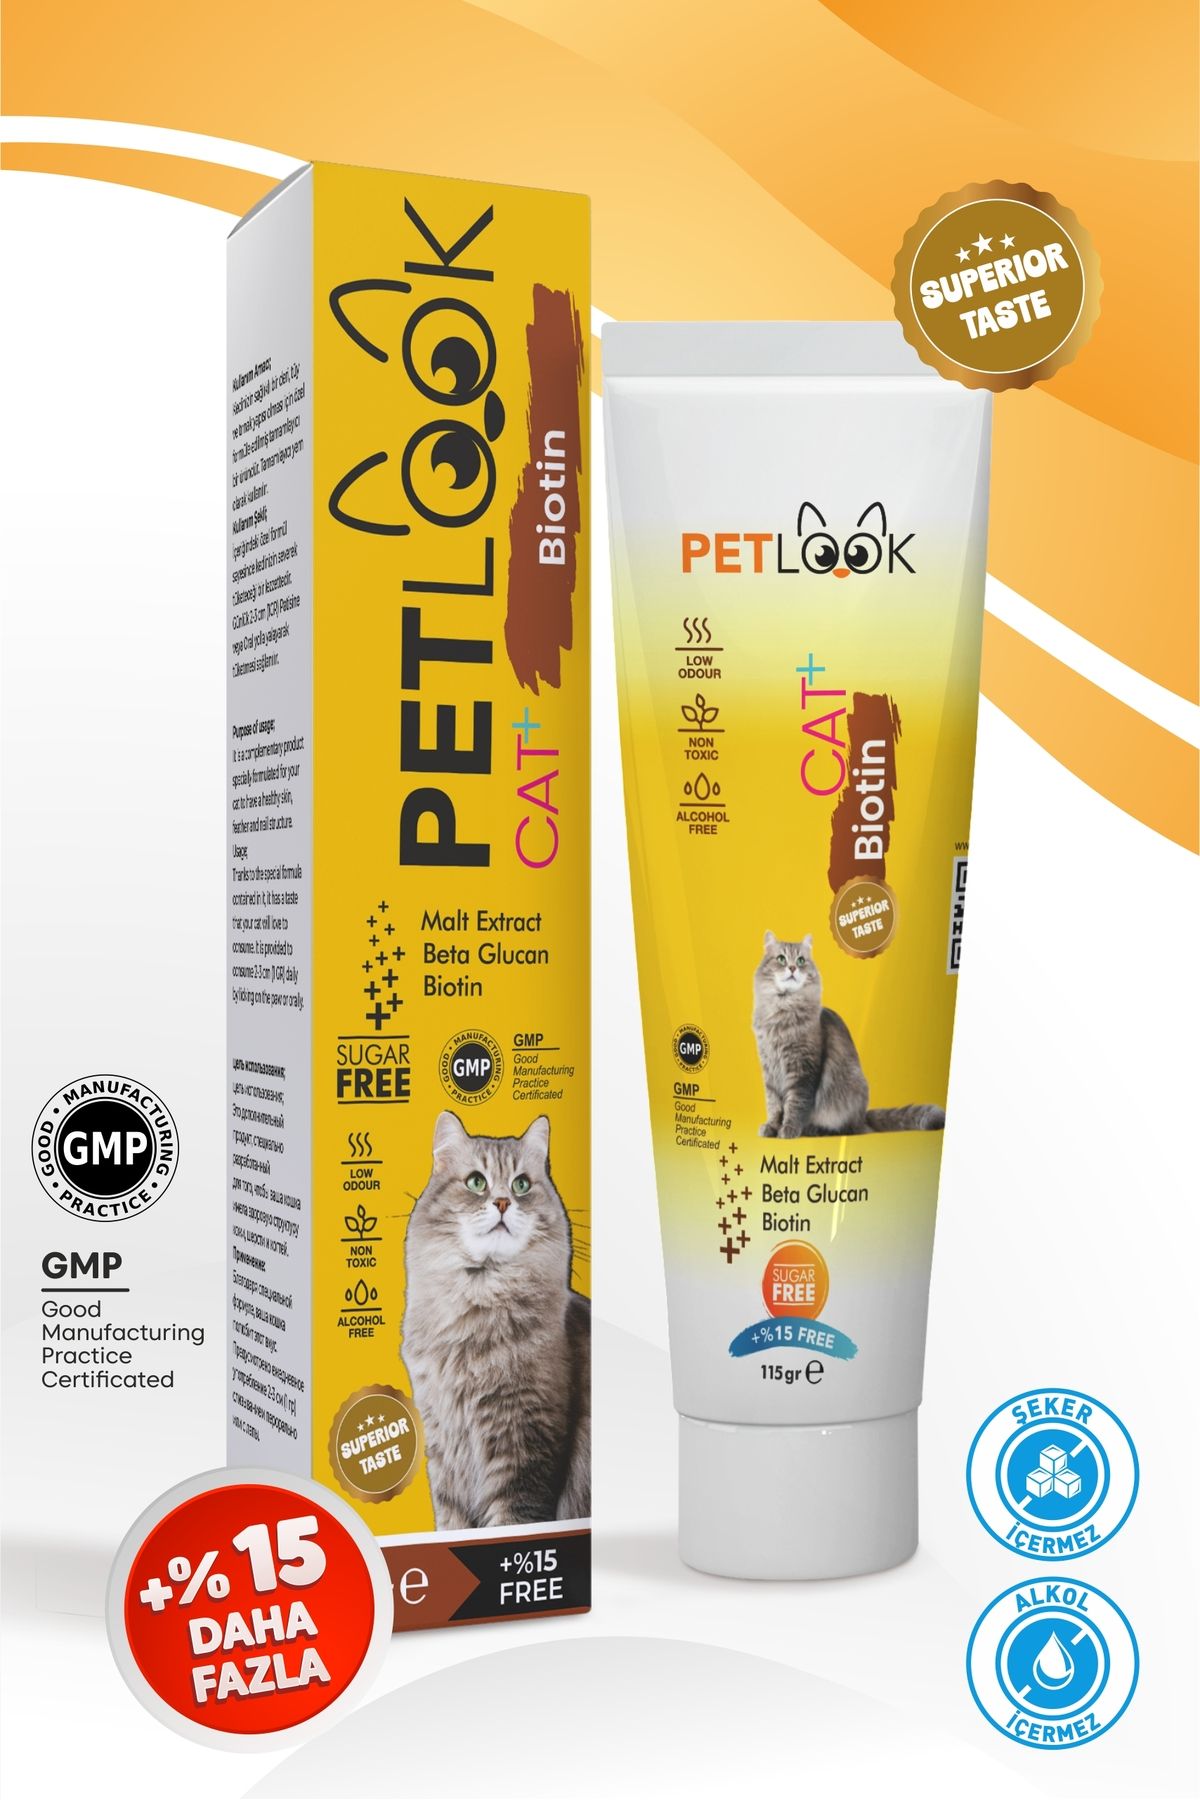 PetLook Kedi Tüy Dökümü Engelleyici Biotin Kedi Maltı, Kedi Vitamini, Kedi Ödülü